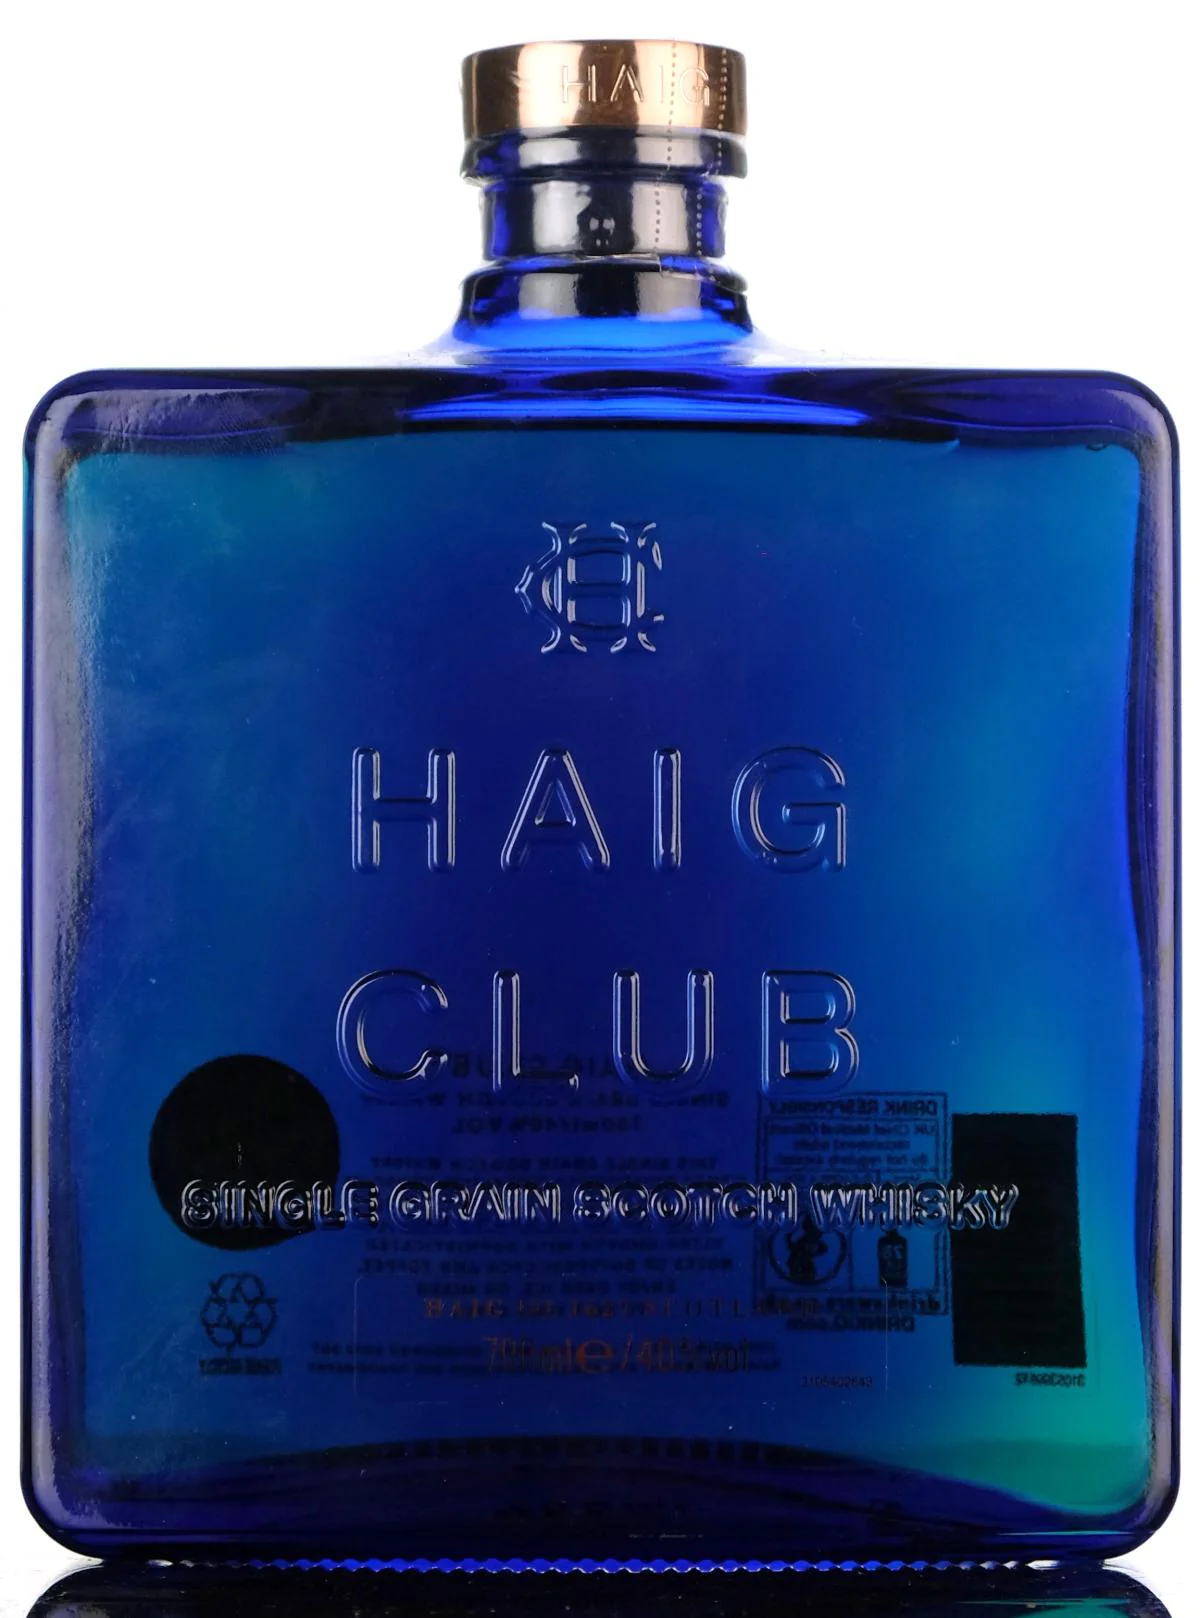 Haig Club